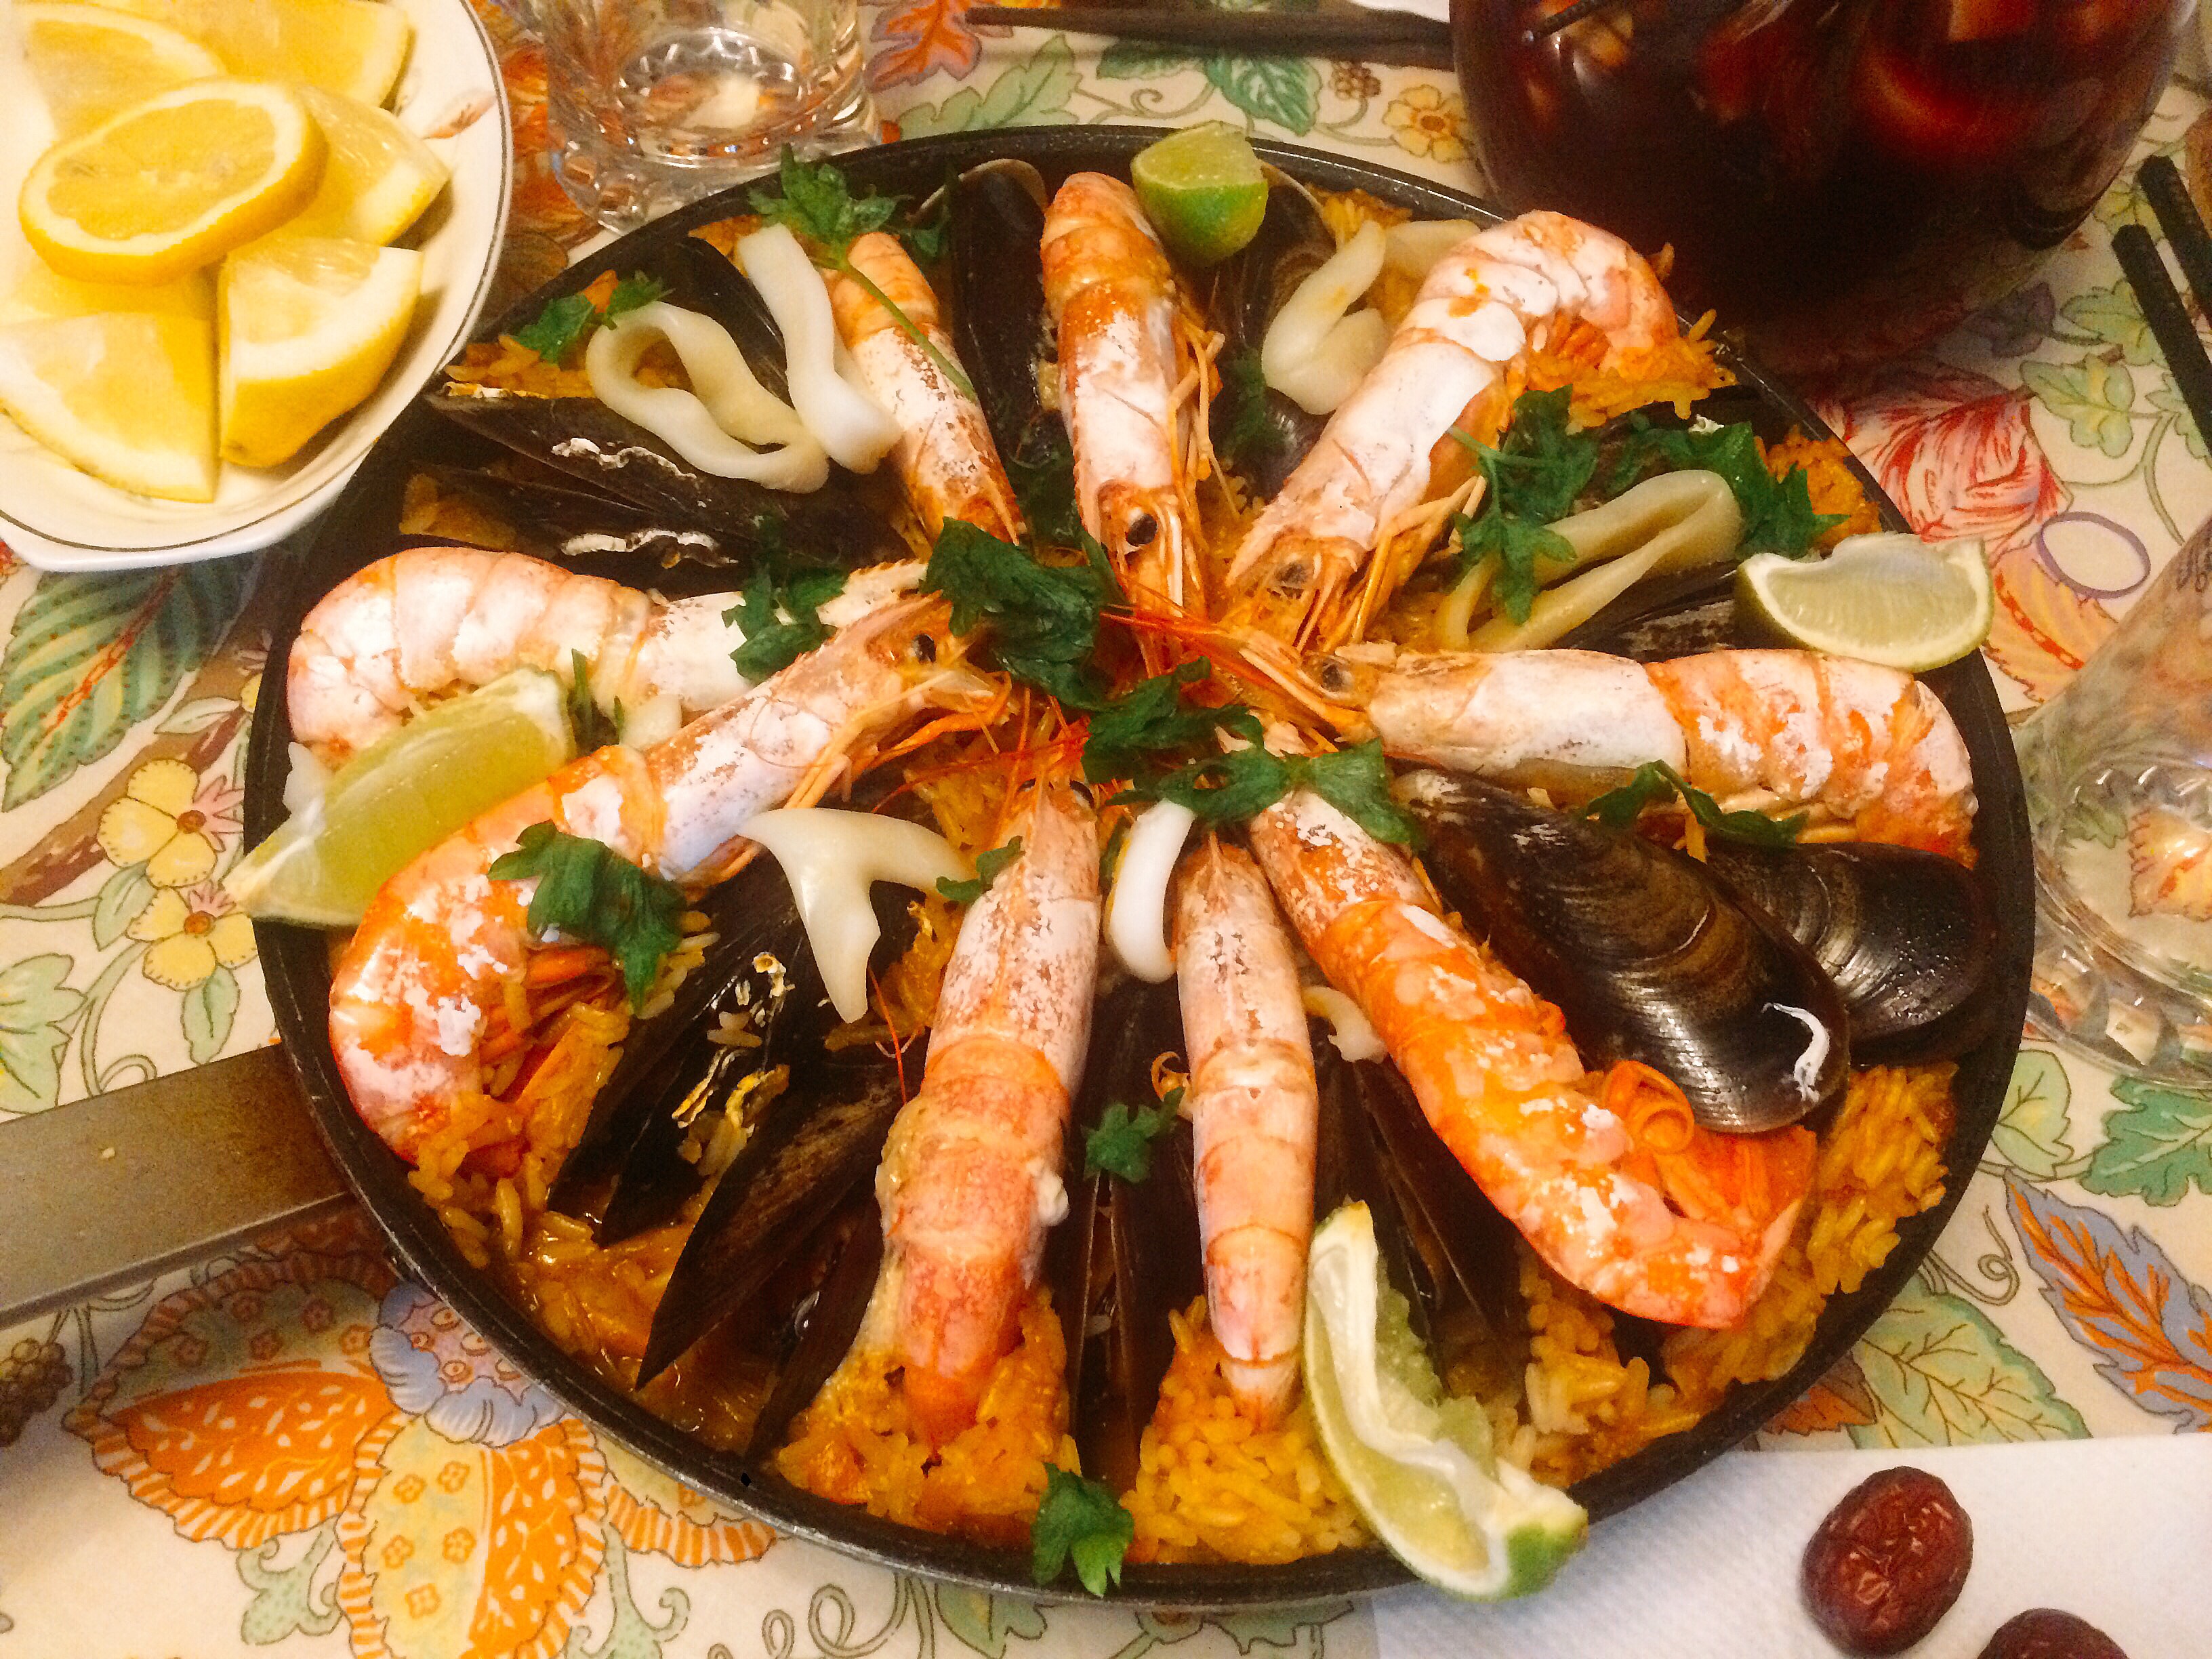 西班牙海鲜饭的做法